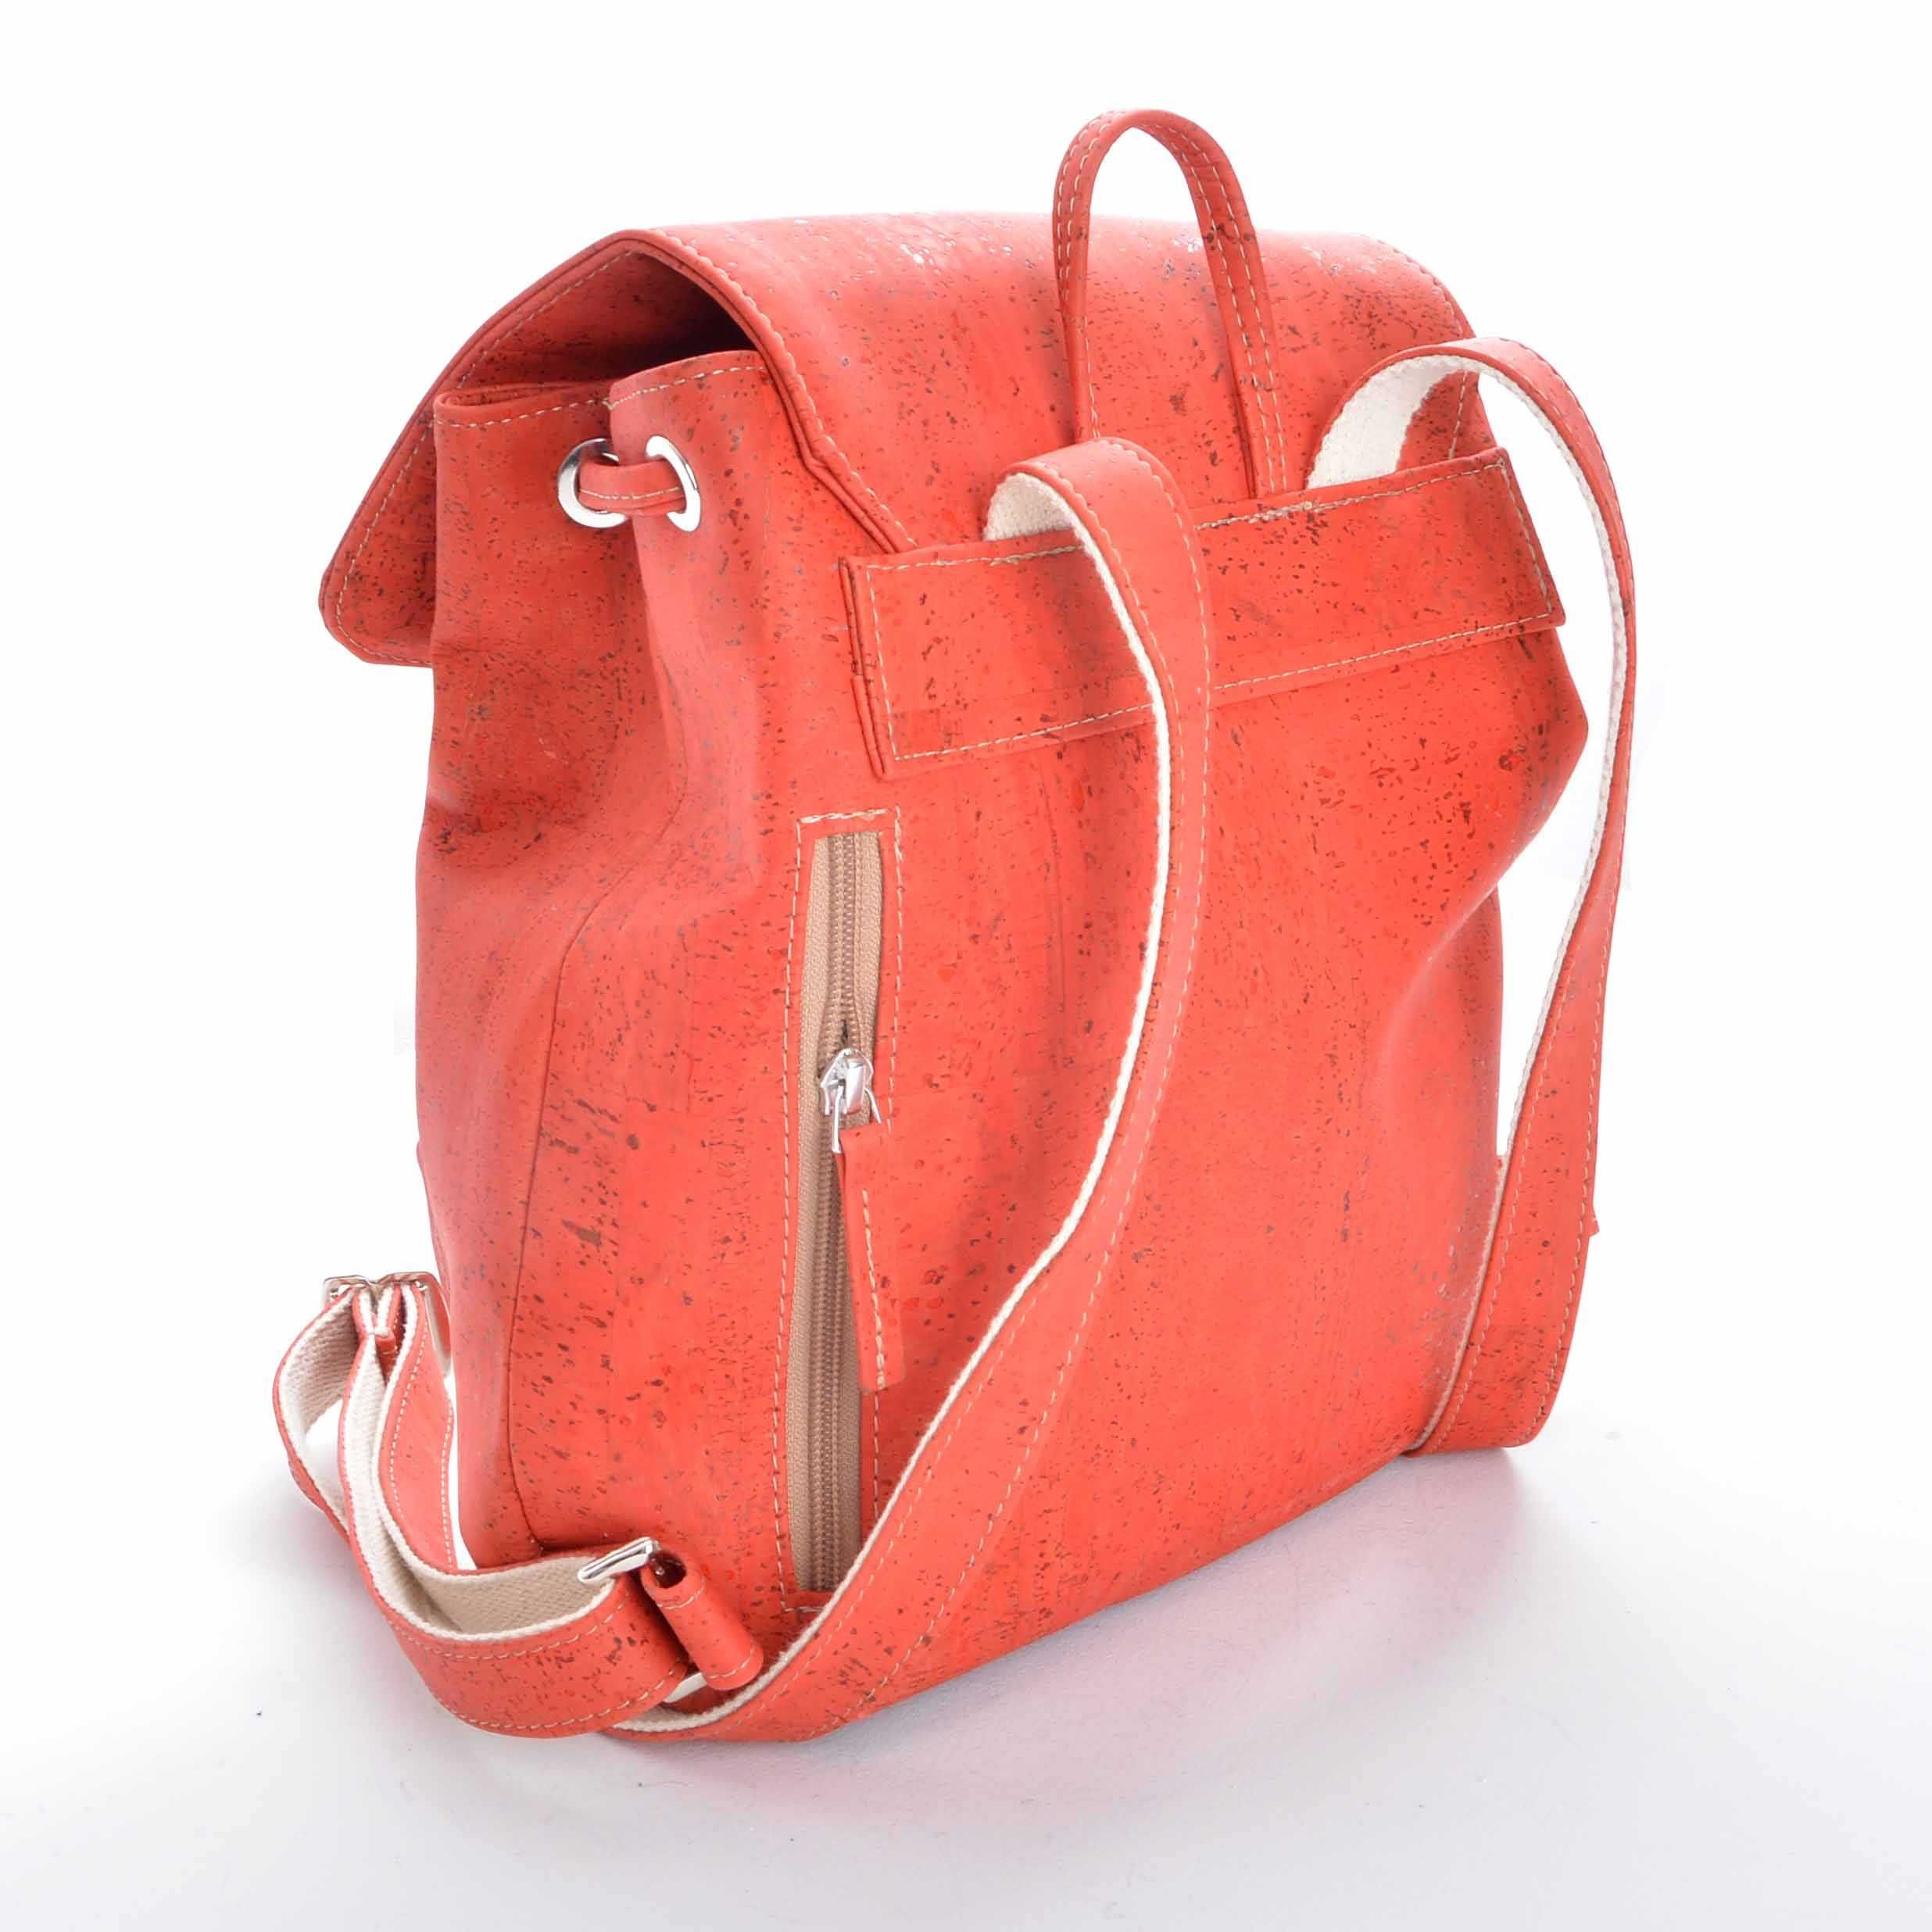 Plecak z naturalnego korka, ekologiczny, wegański - kolor czerwony